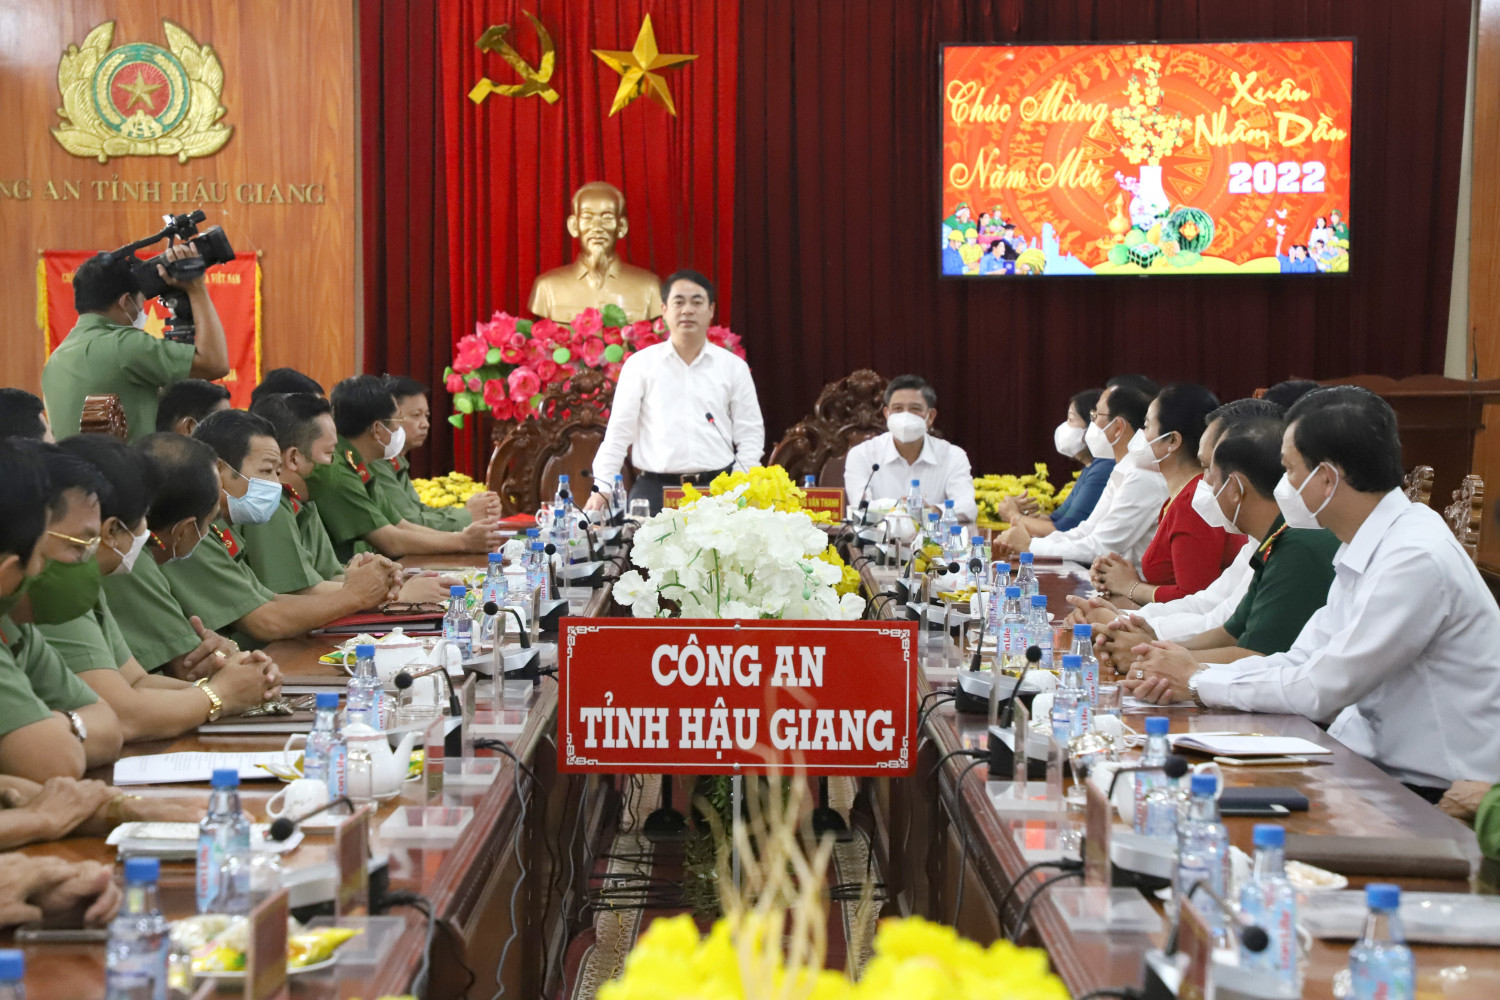 Đồng chí Nghiêm Xuân Thành - Ủy viên Ban Chấp hành Trung ương Đảng, Bí thư Tỉnh ủy Hậu Giang phát biểu tại buổi làm việc